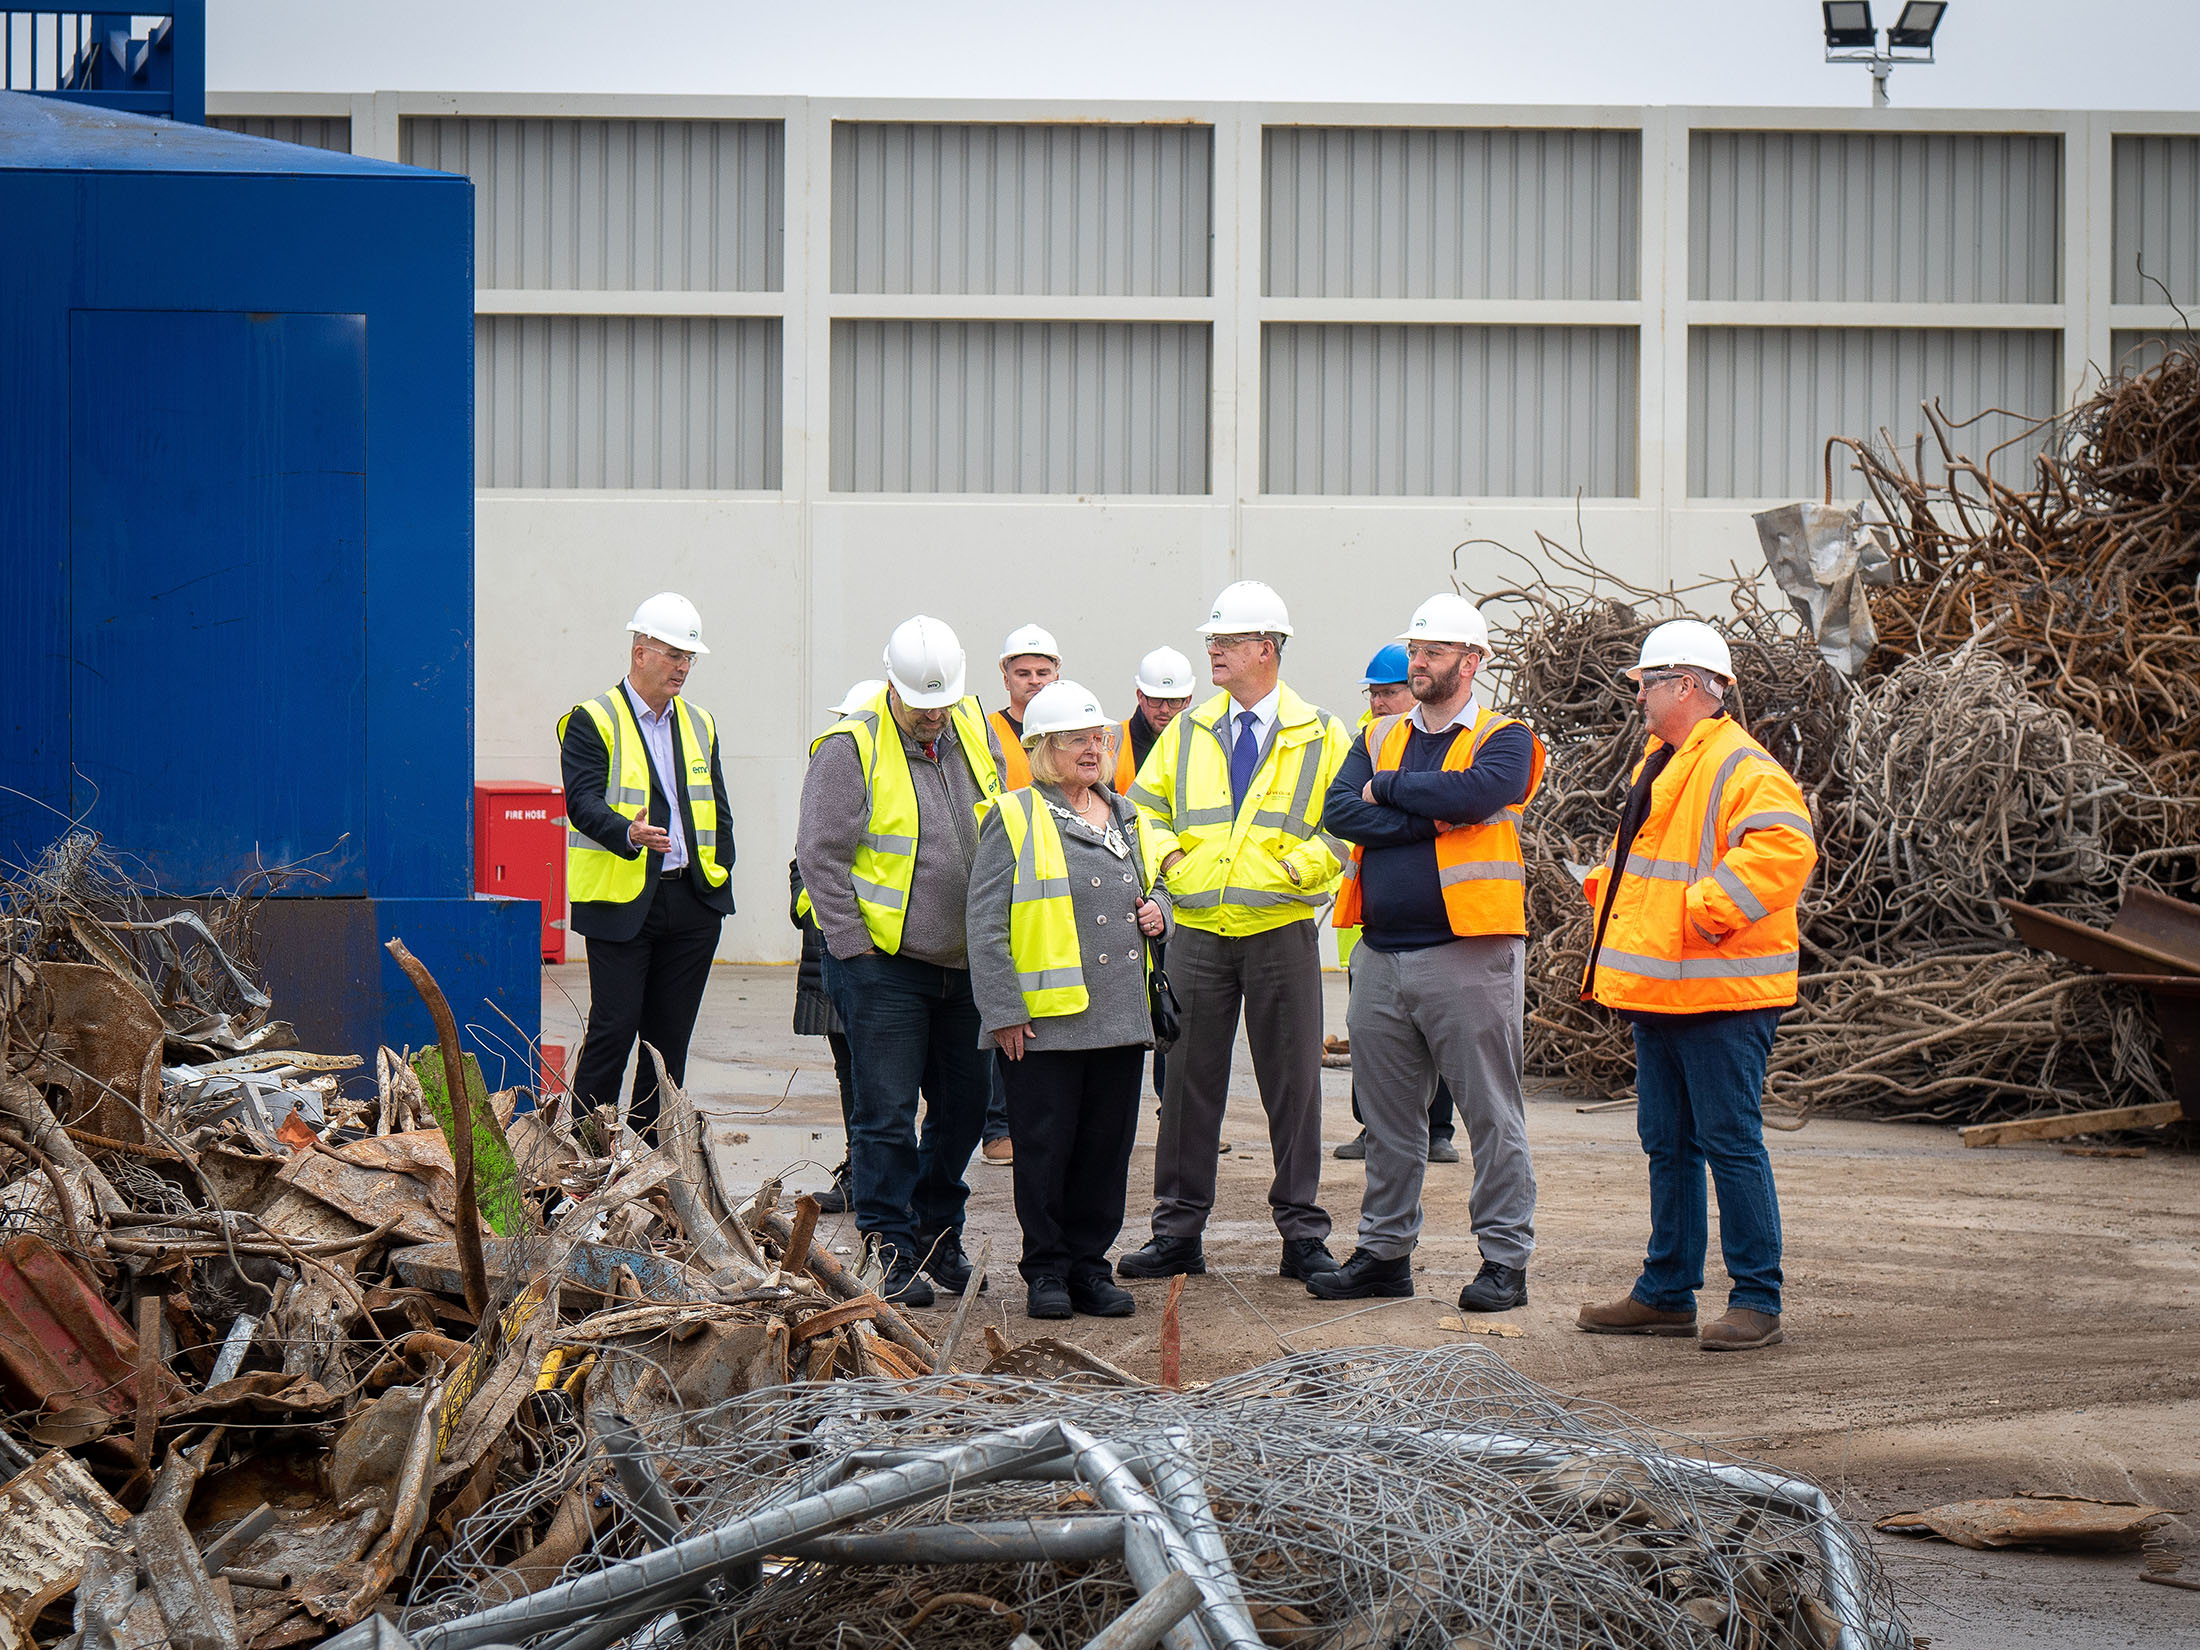 Mayor of Ashford opens new EMR recycling facility in Ashford